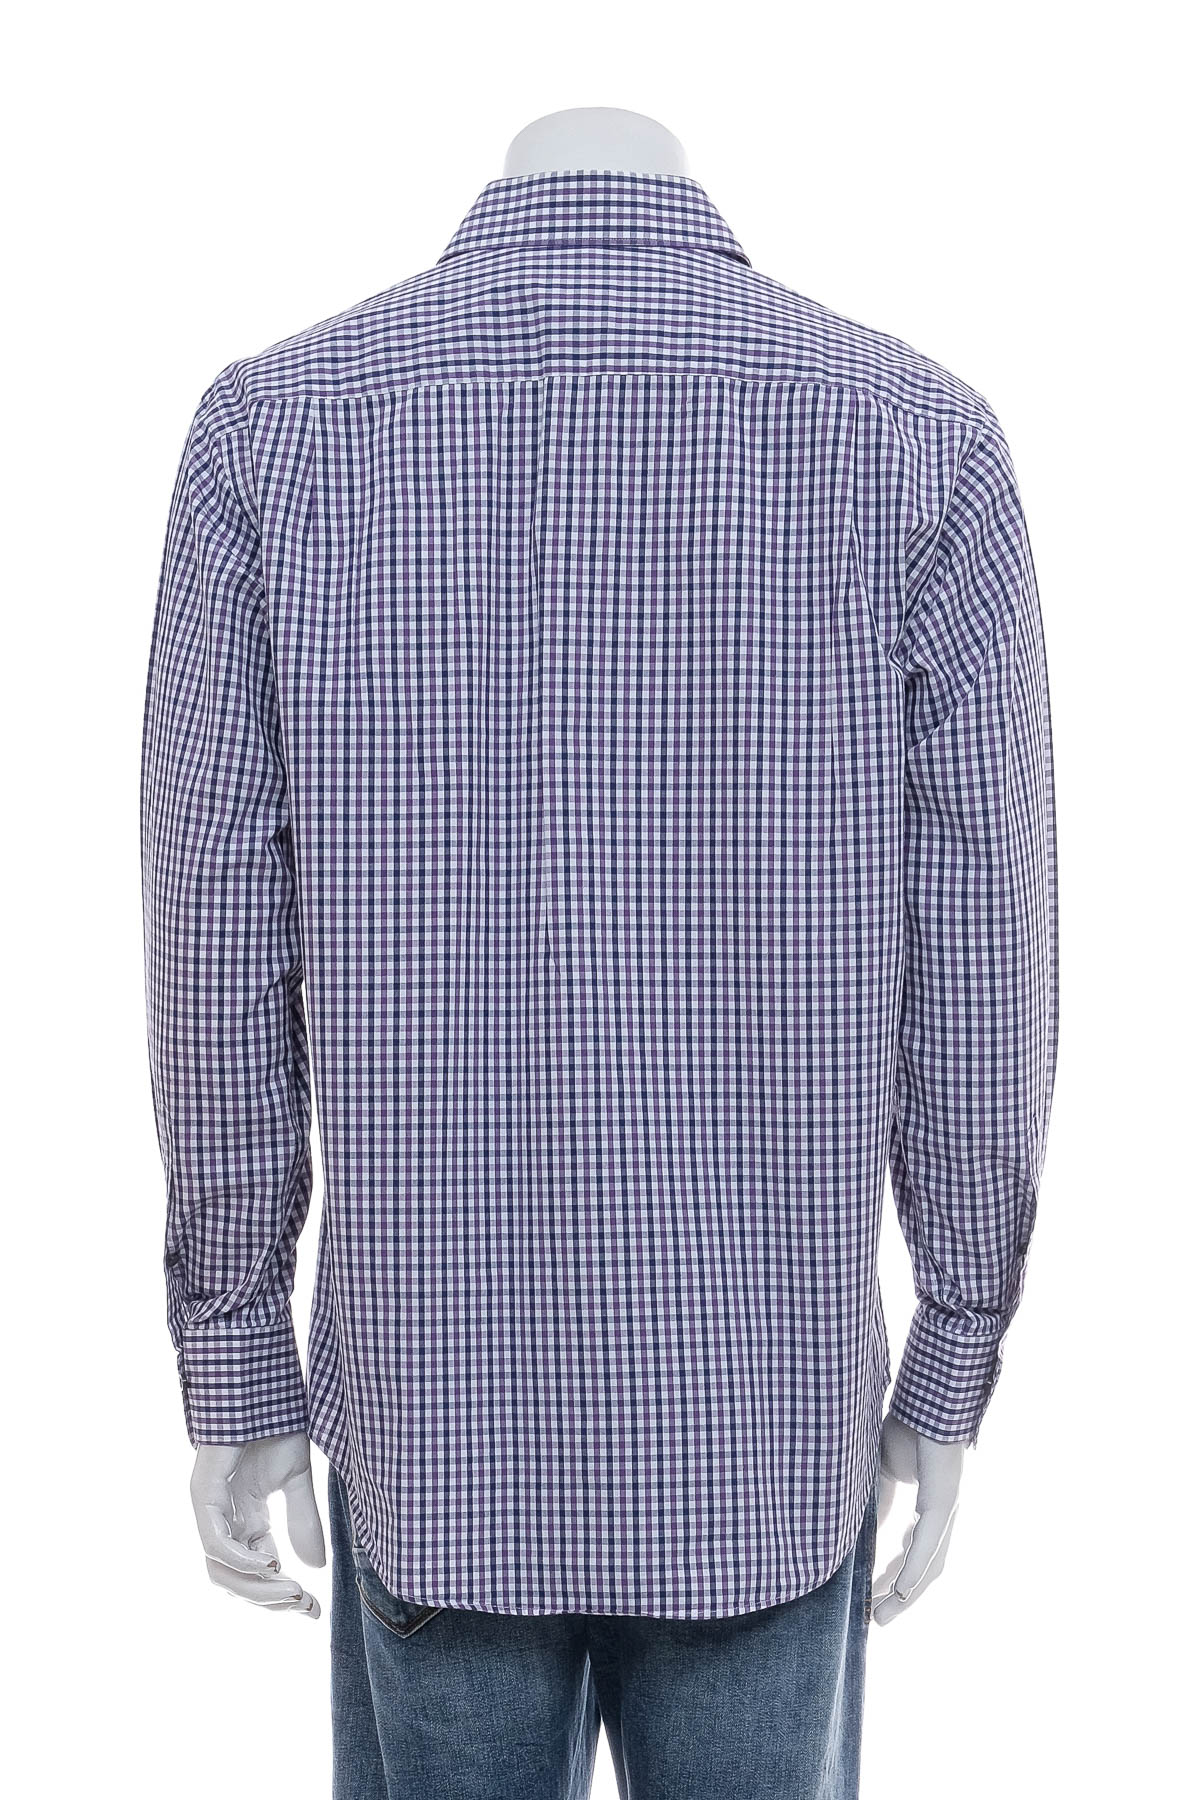 Ανδρικό πουκάμισο - Tom Rusborg - 1